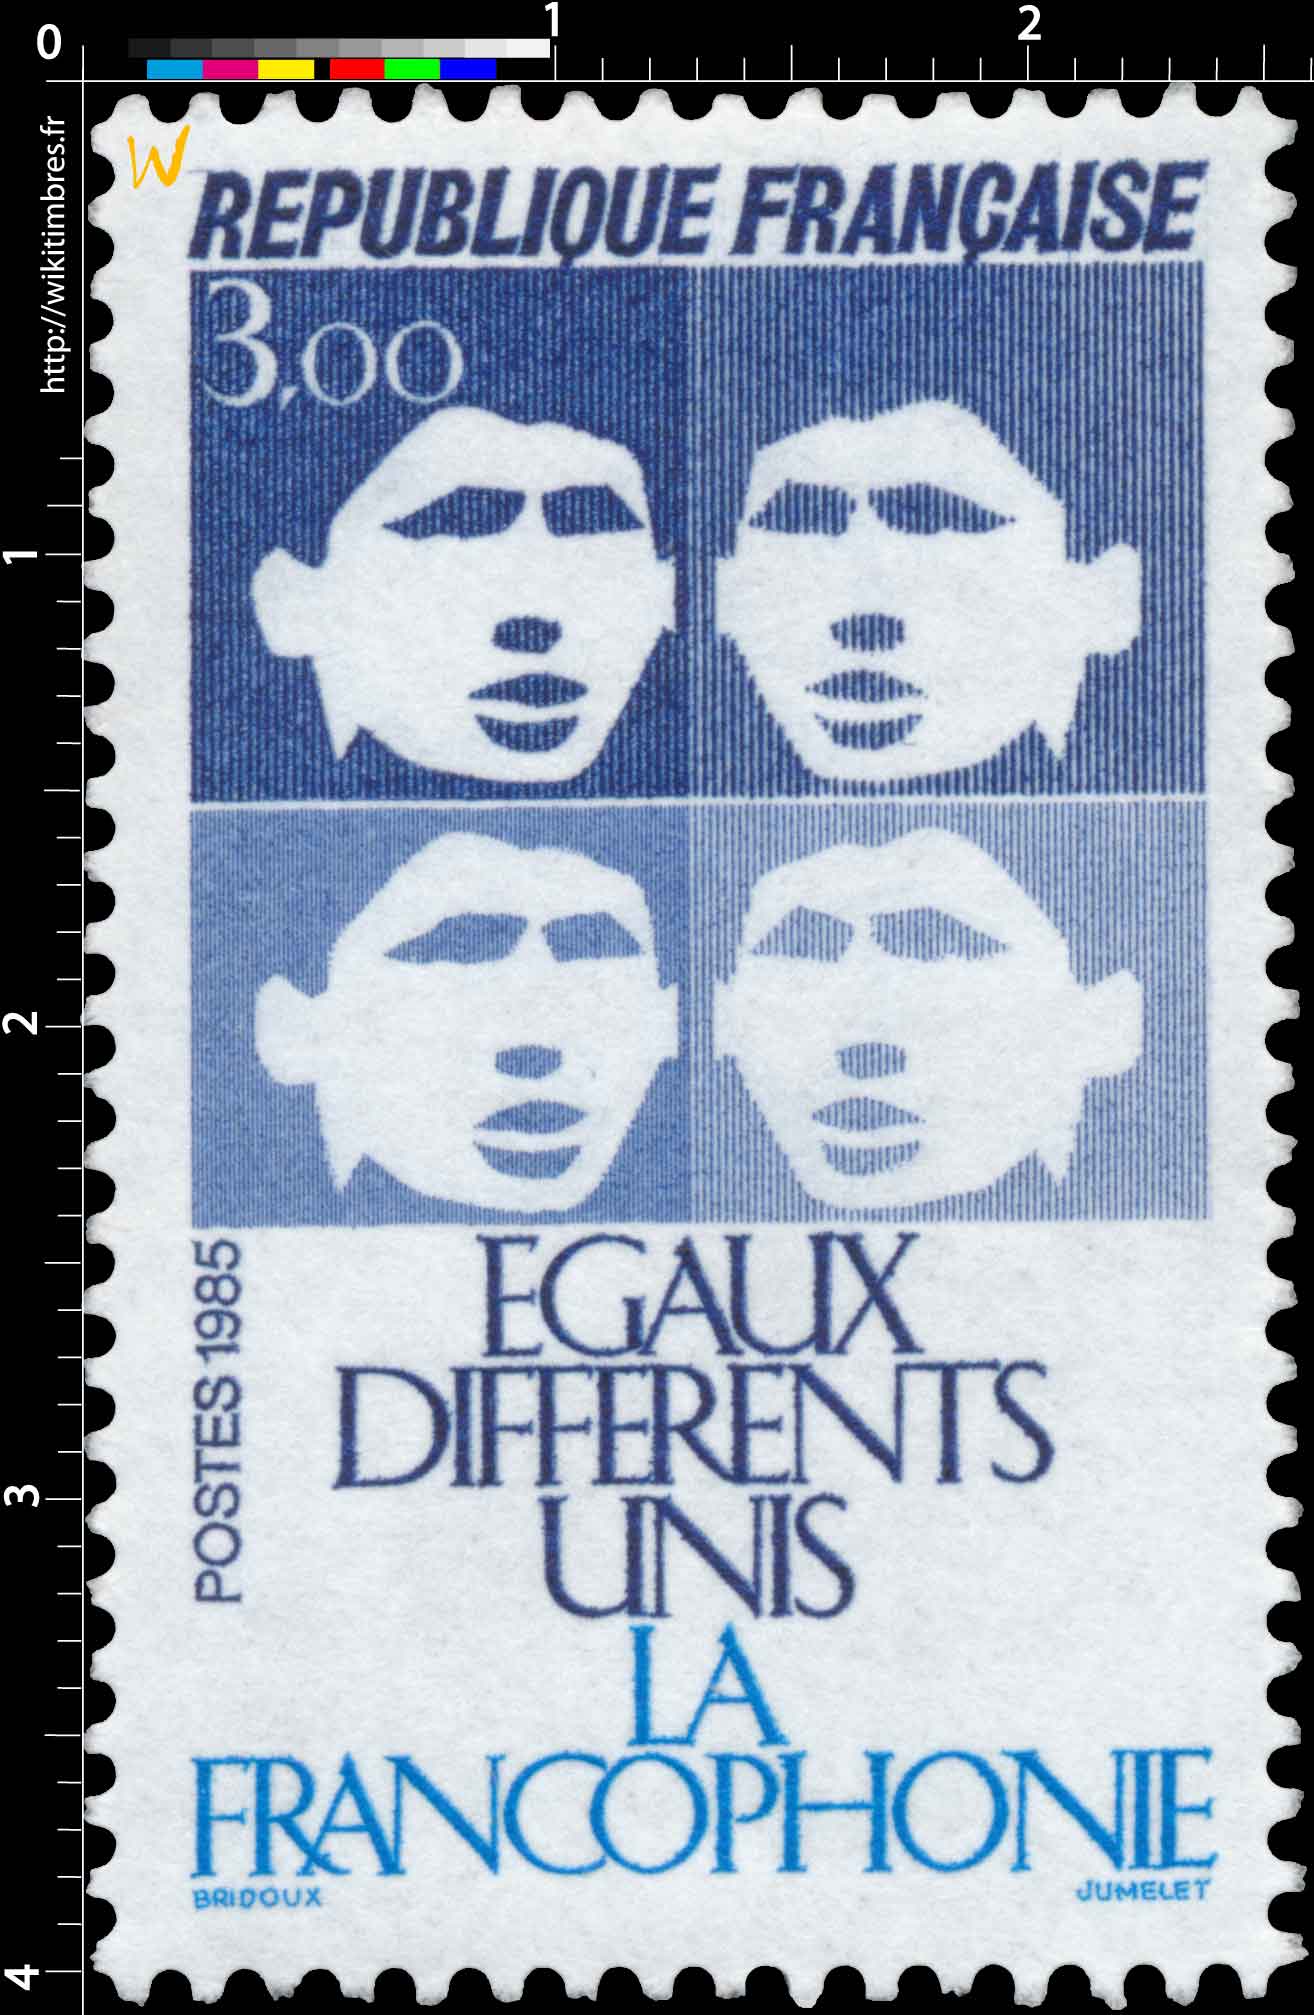 1985 LA FRANCOPHONIE ÉGAUX DIFFÉRENTS UNIS